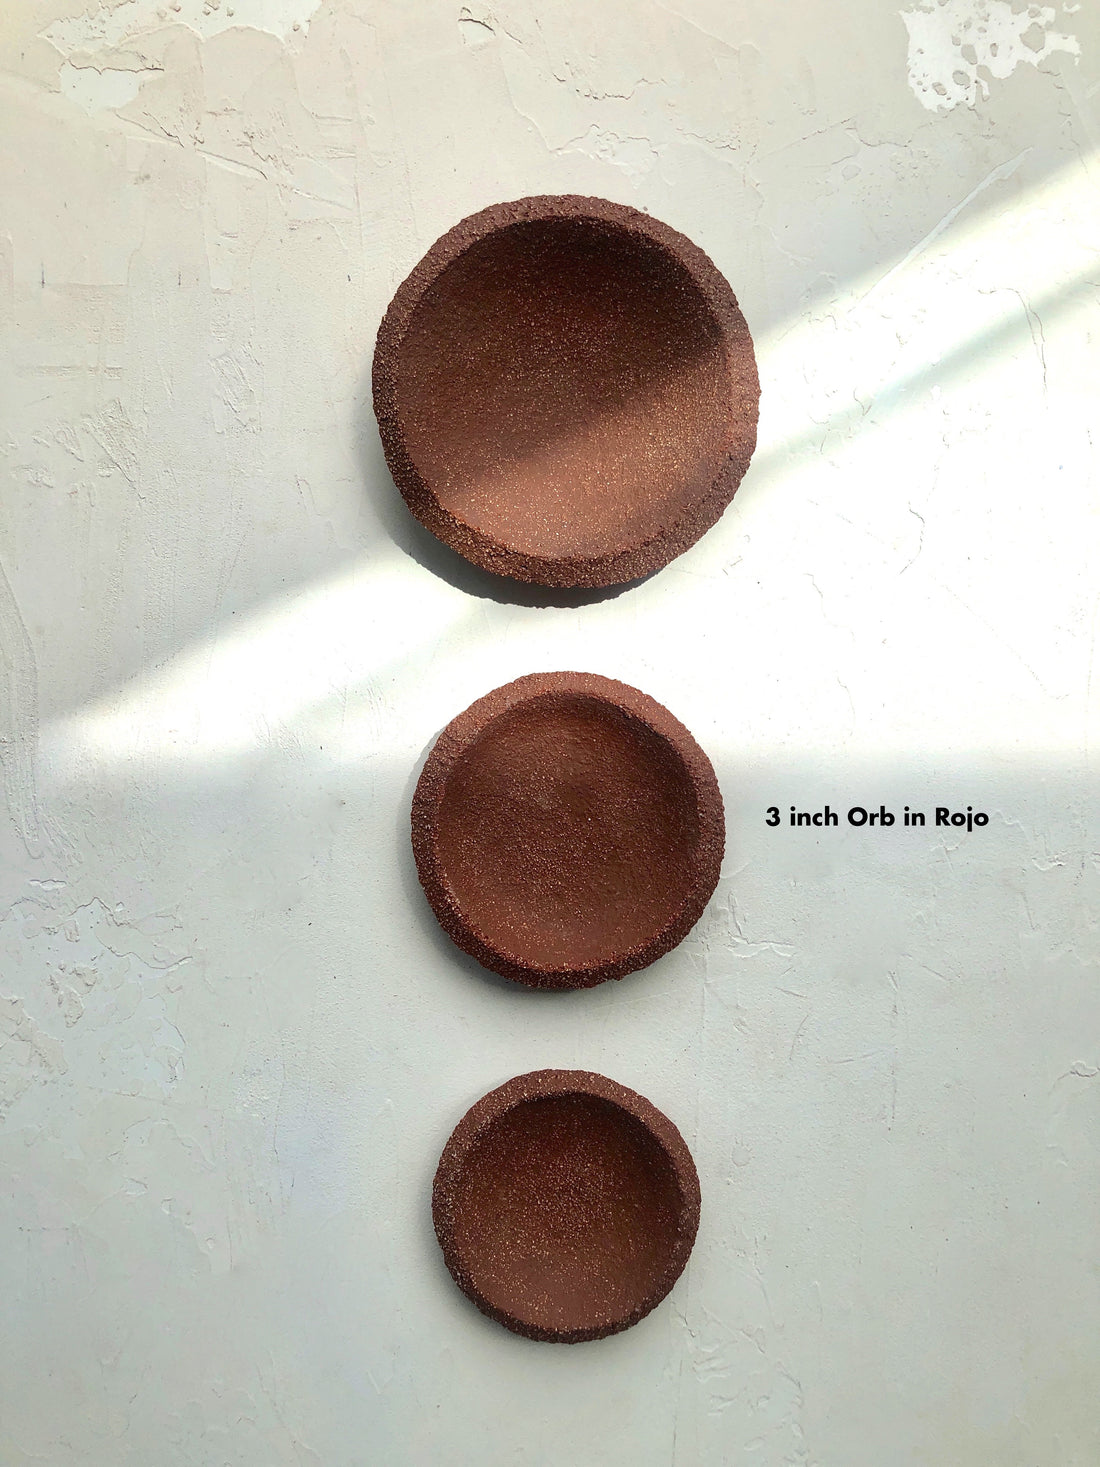 3 inch Orb Dish in Rojo